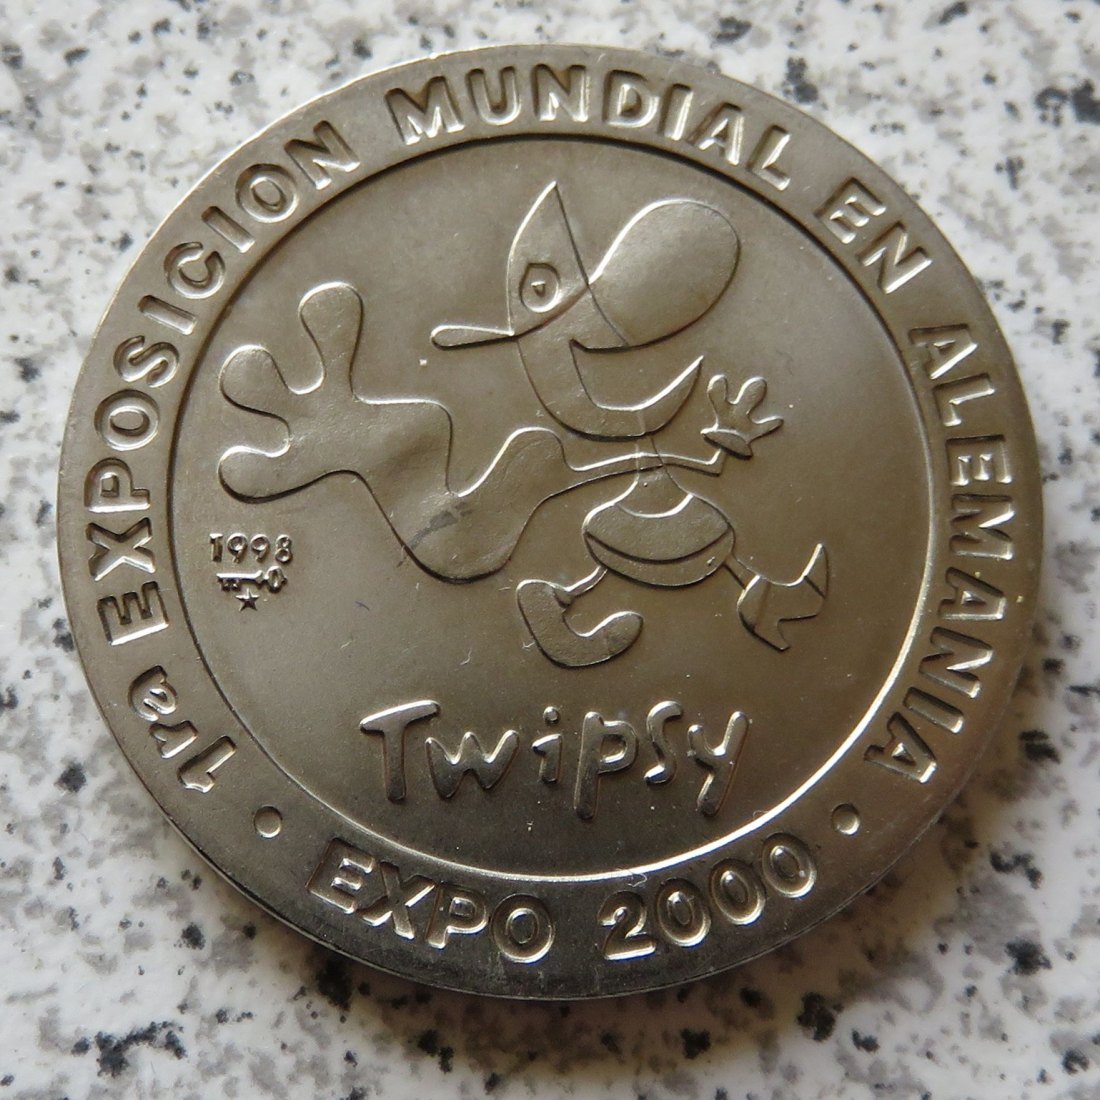  Cuba 1 Peso 1998 Twipsy / Expo Hannover   